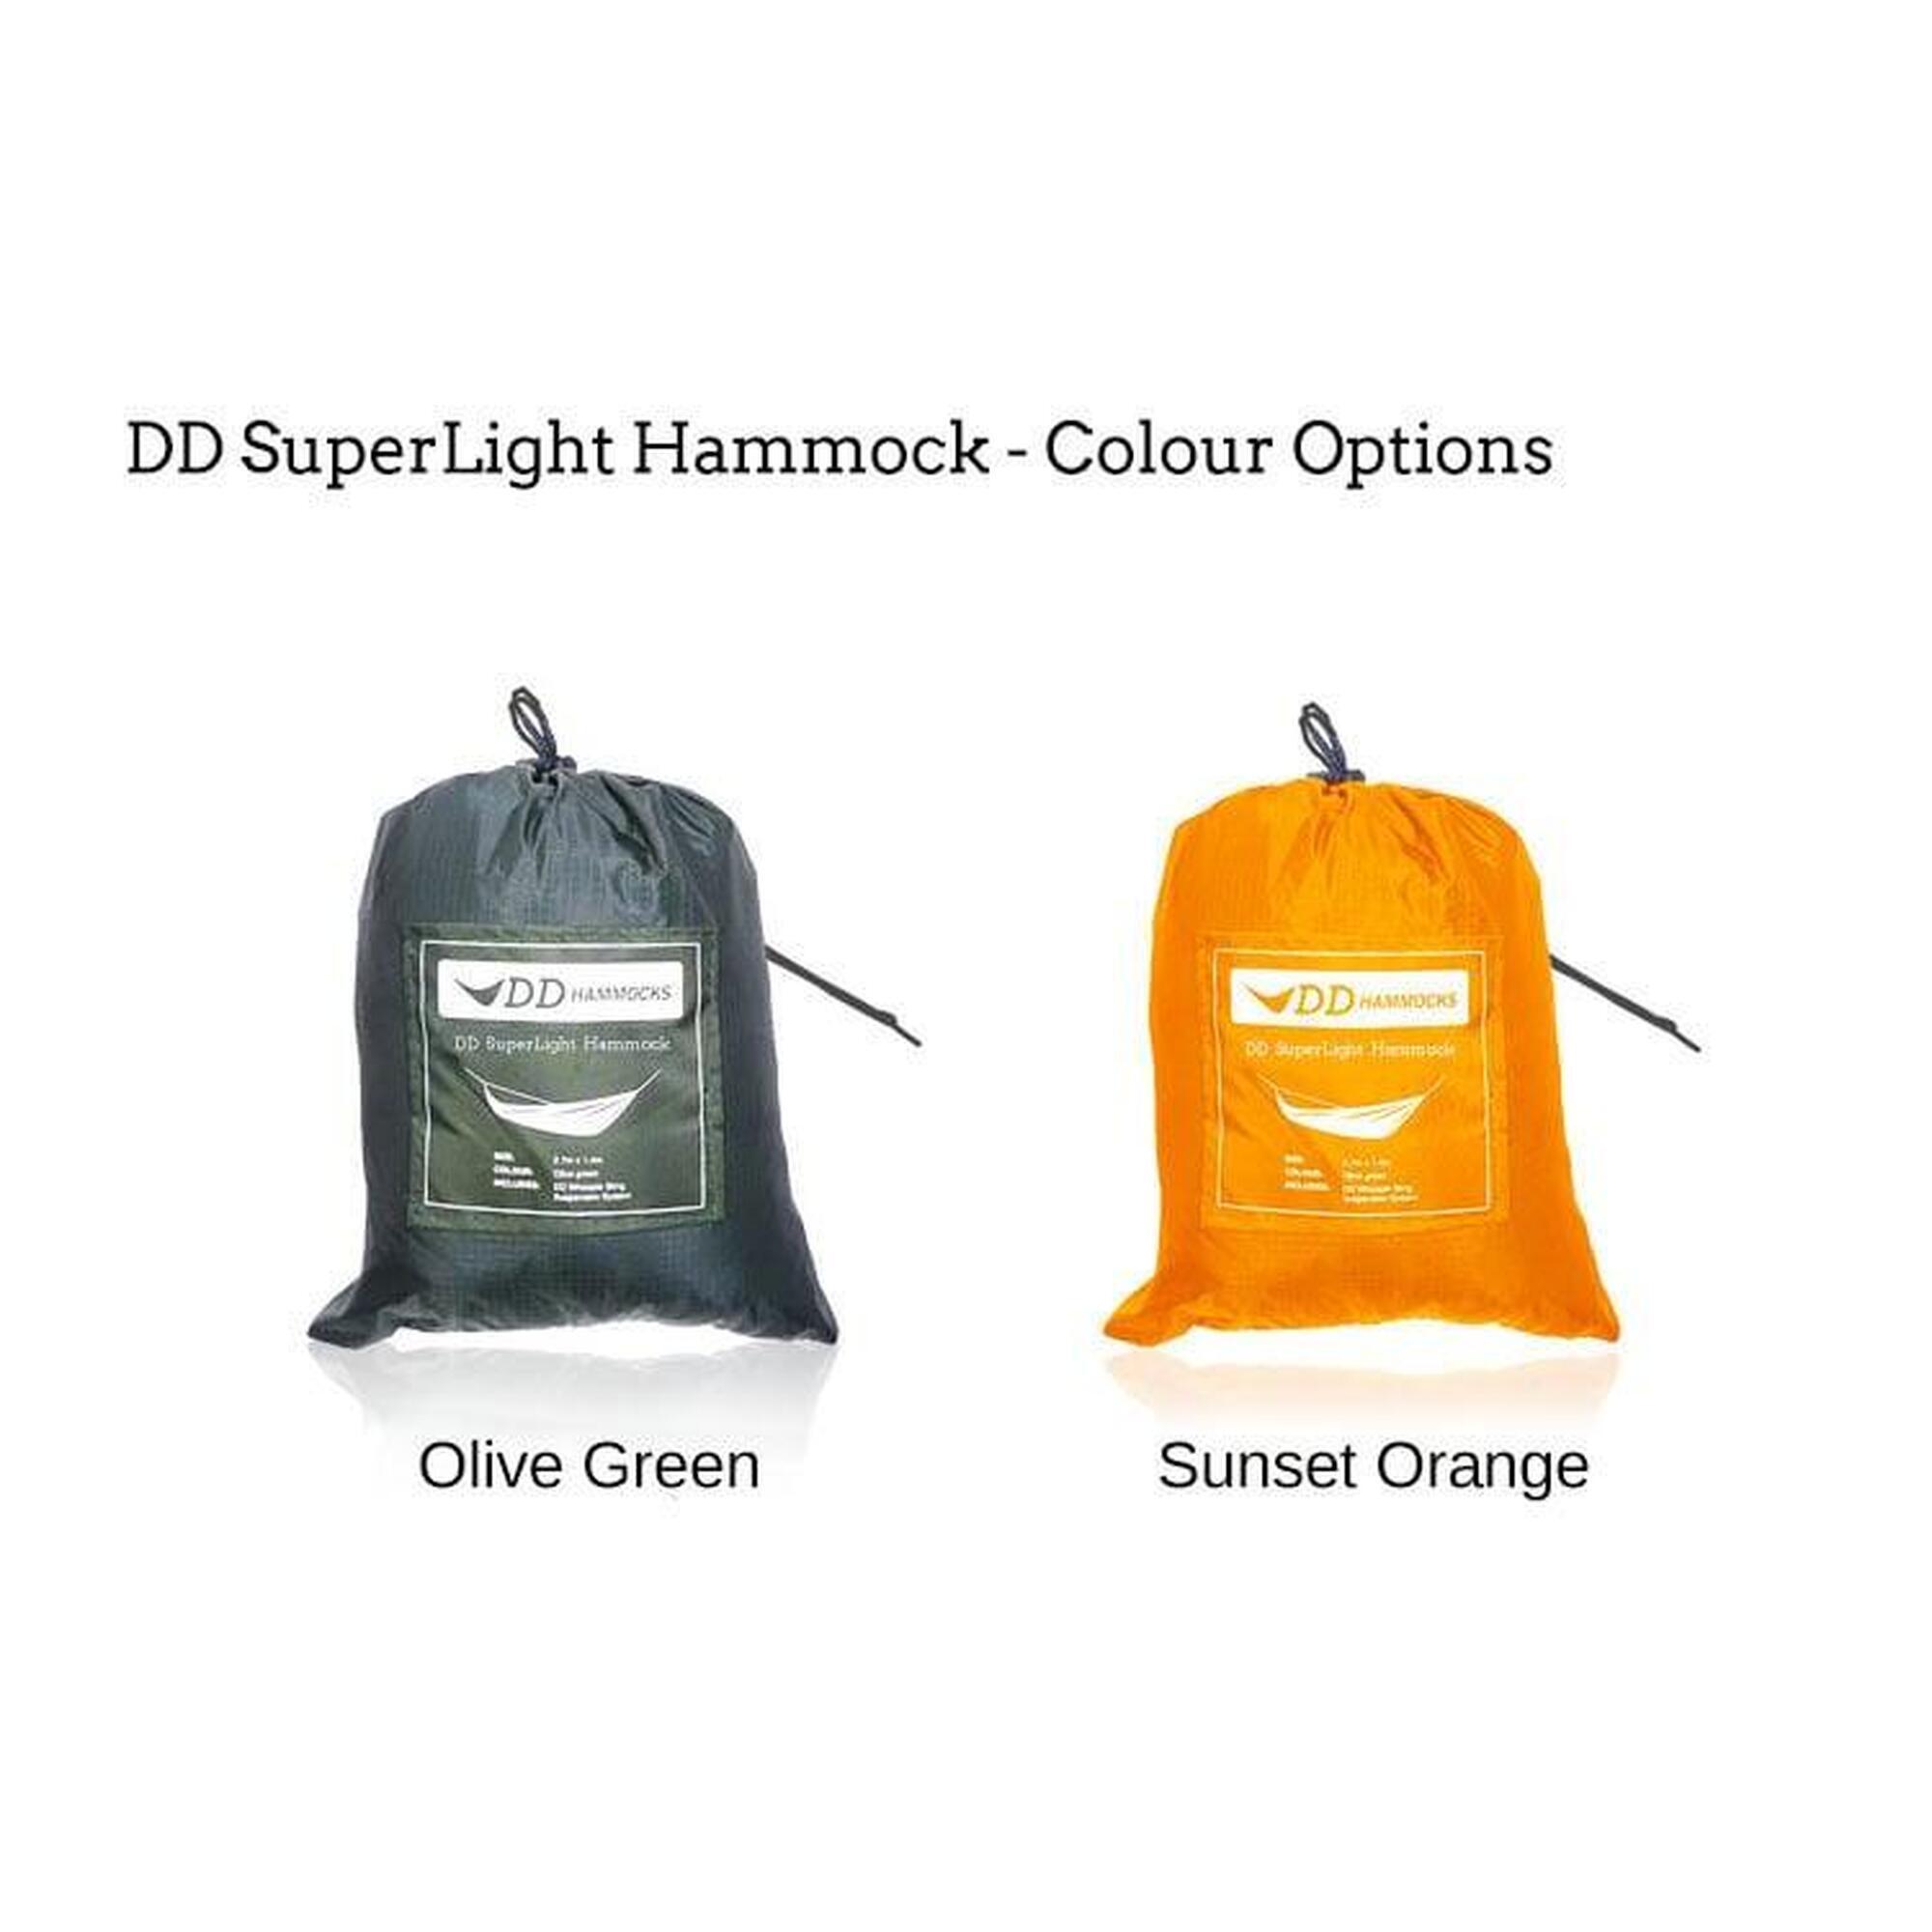 DD Hammocks Superlight Hangmat - Olive Green